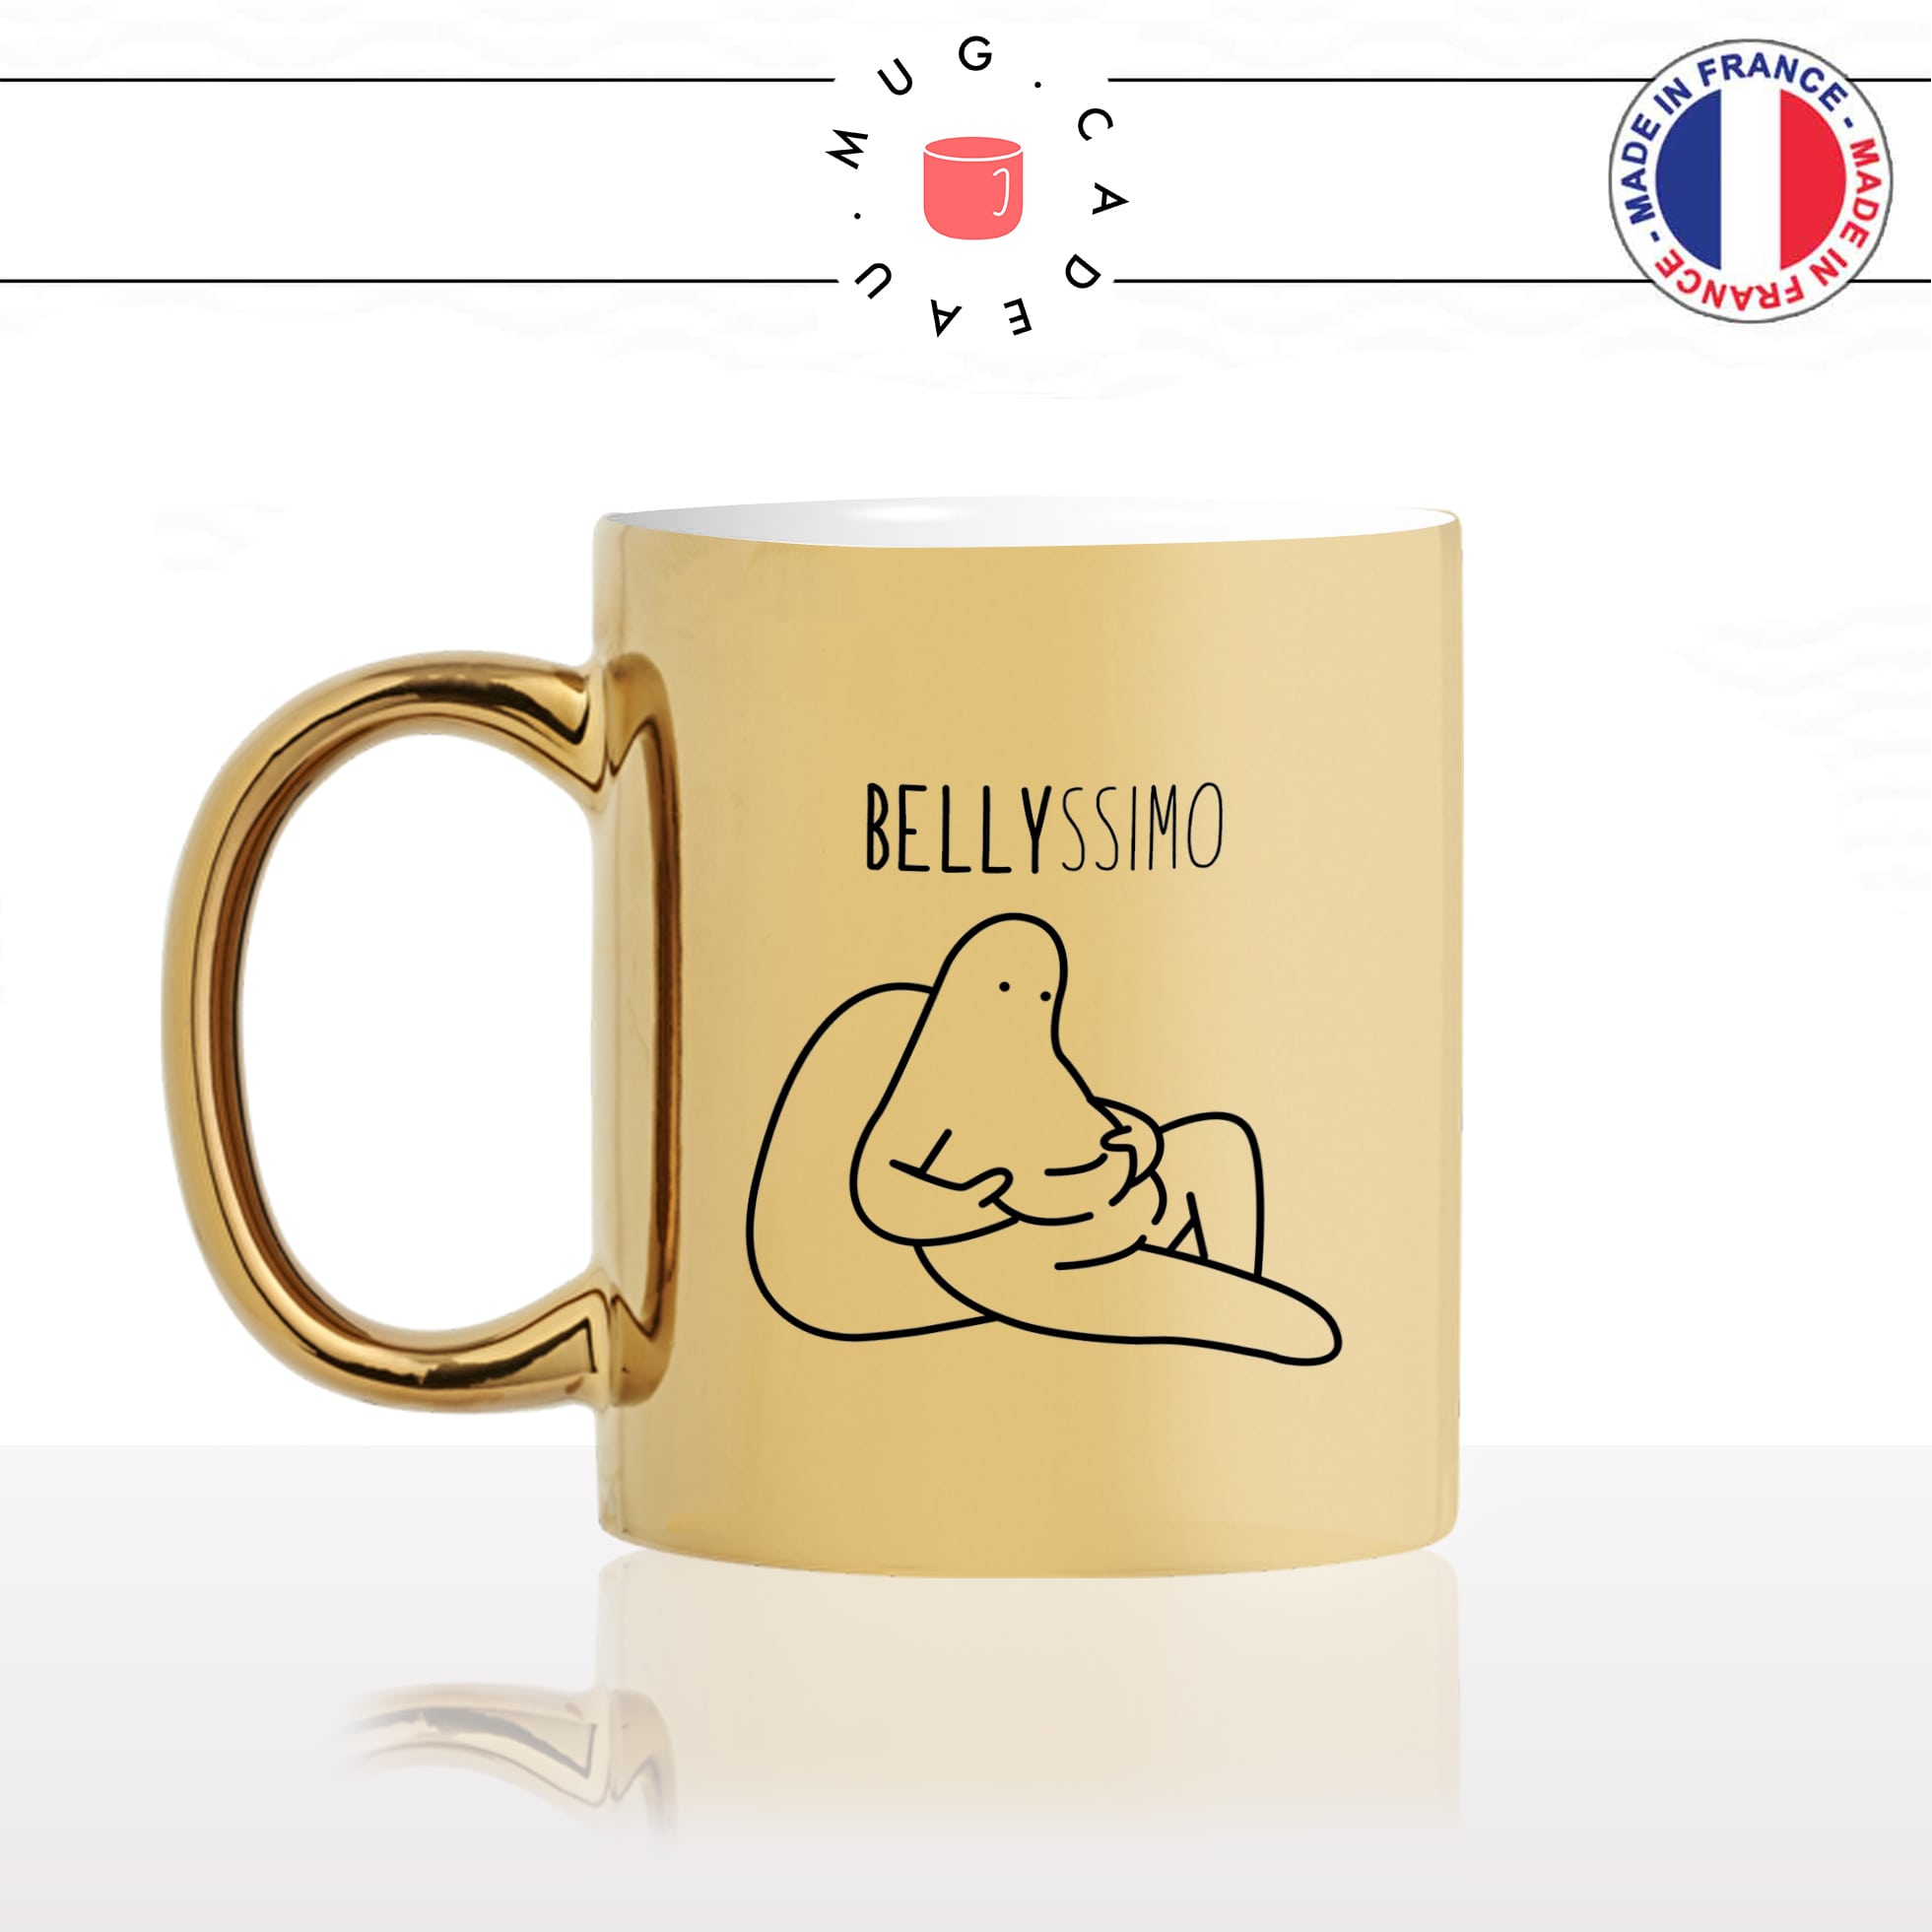 mug-tasse-doré-or-gold-belly-italien-bellissimo-anglais-joli-fat-gros-regime-canapé-ventre-cool-humour-fun-idée-cadeau-personnalisé-café-thé-min